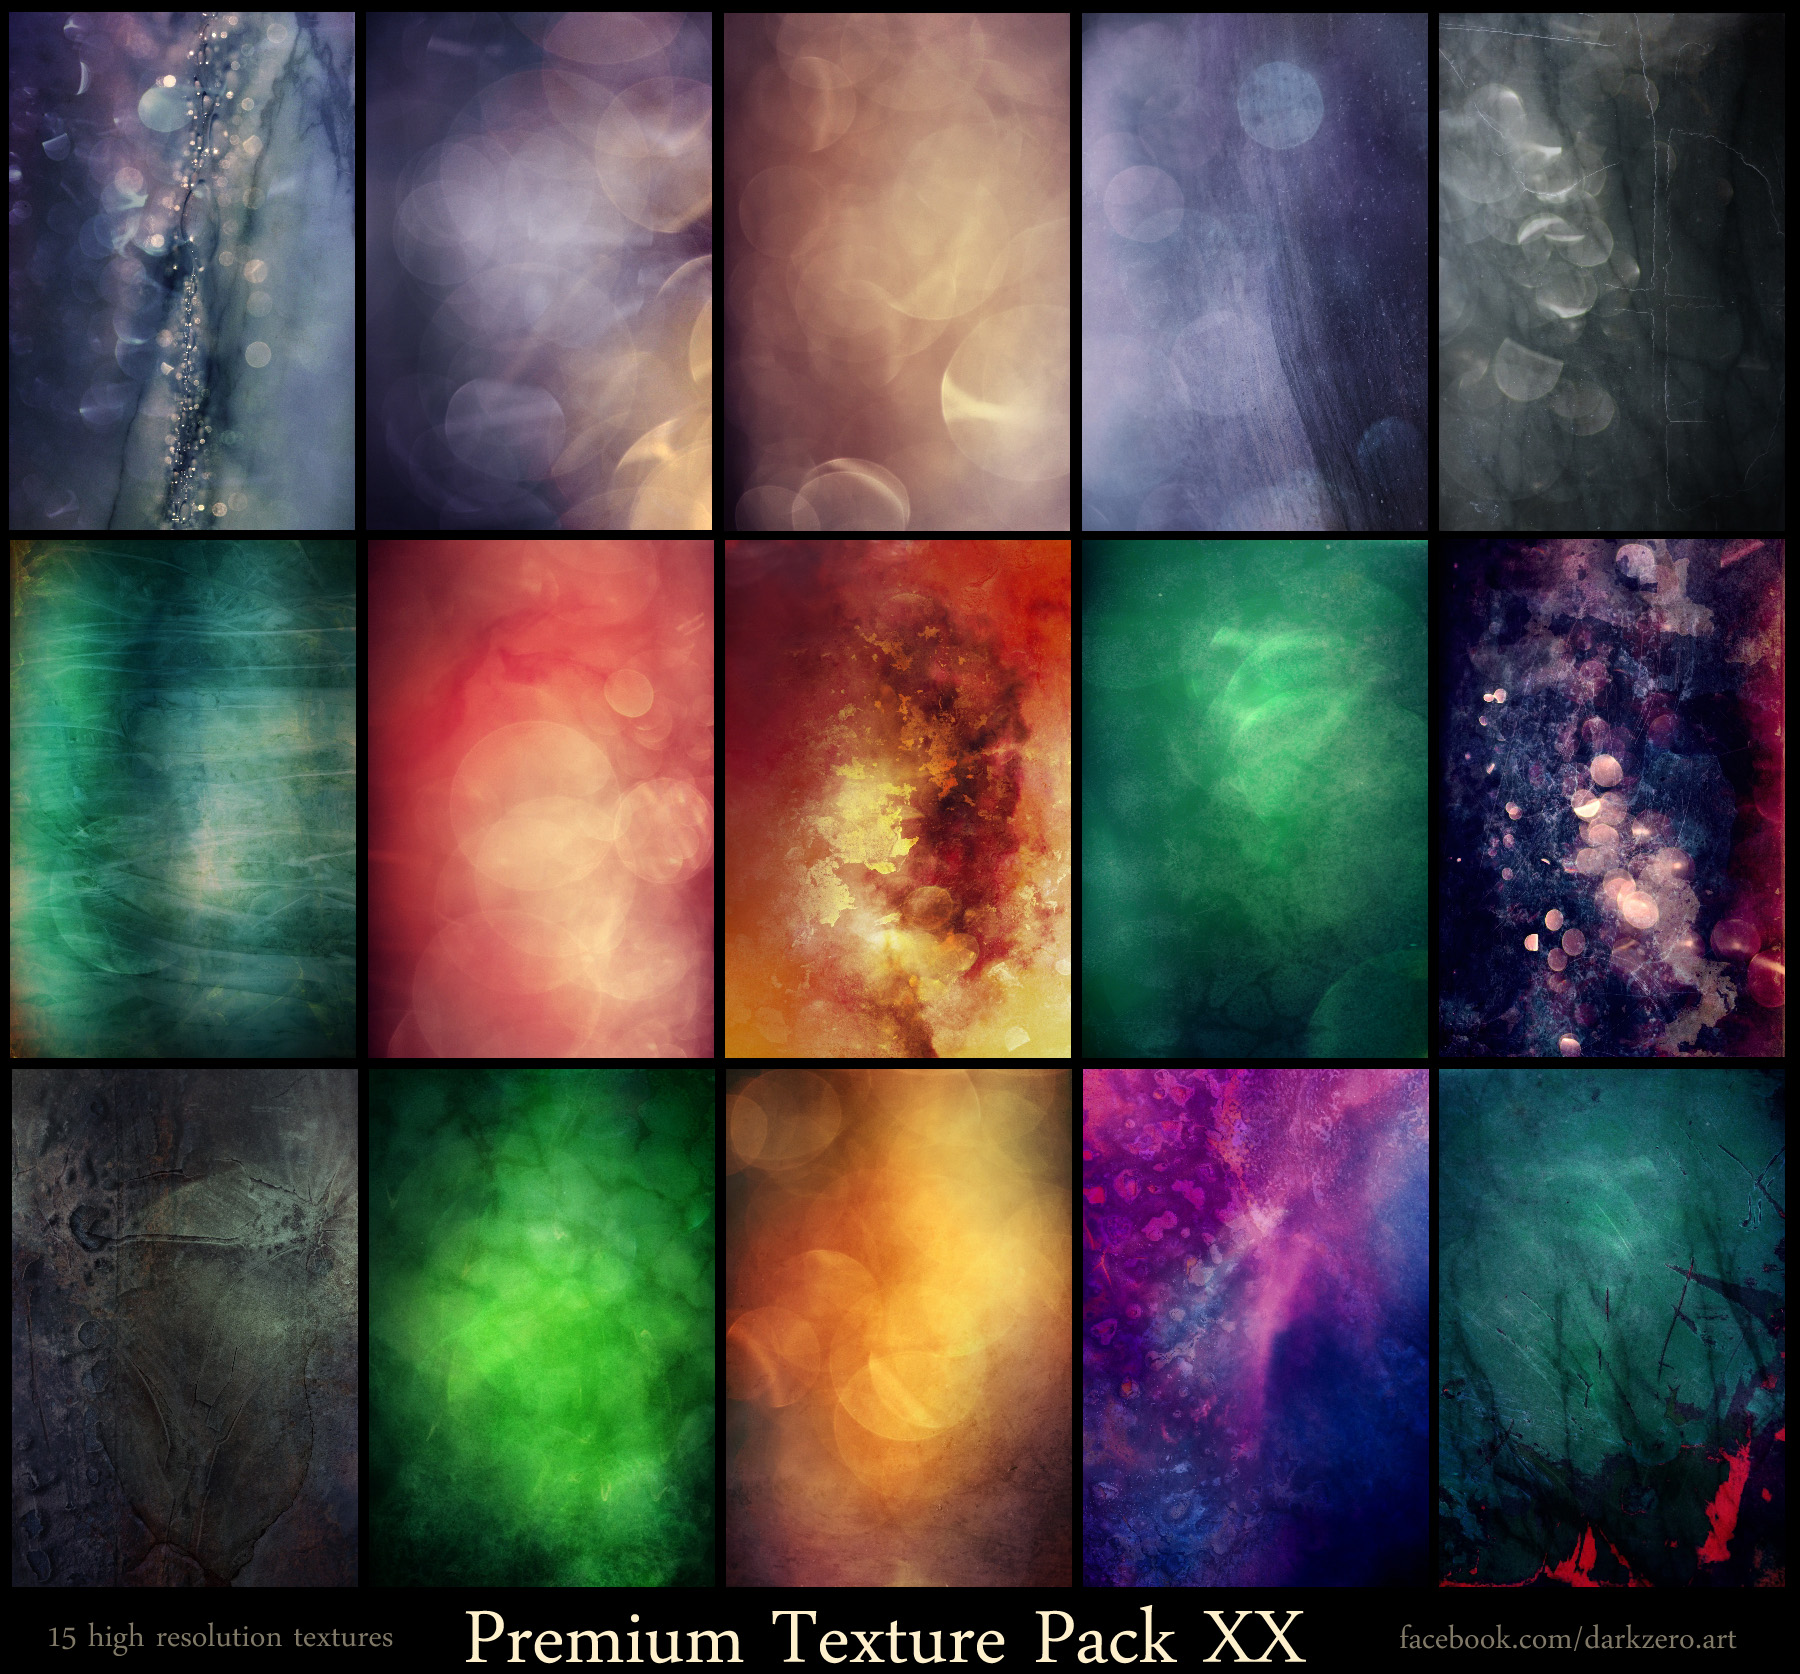 Premium Texture Pack XX